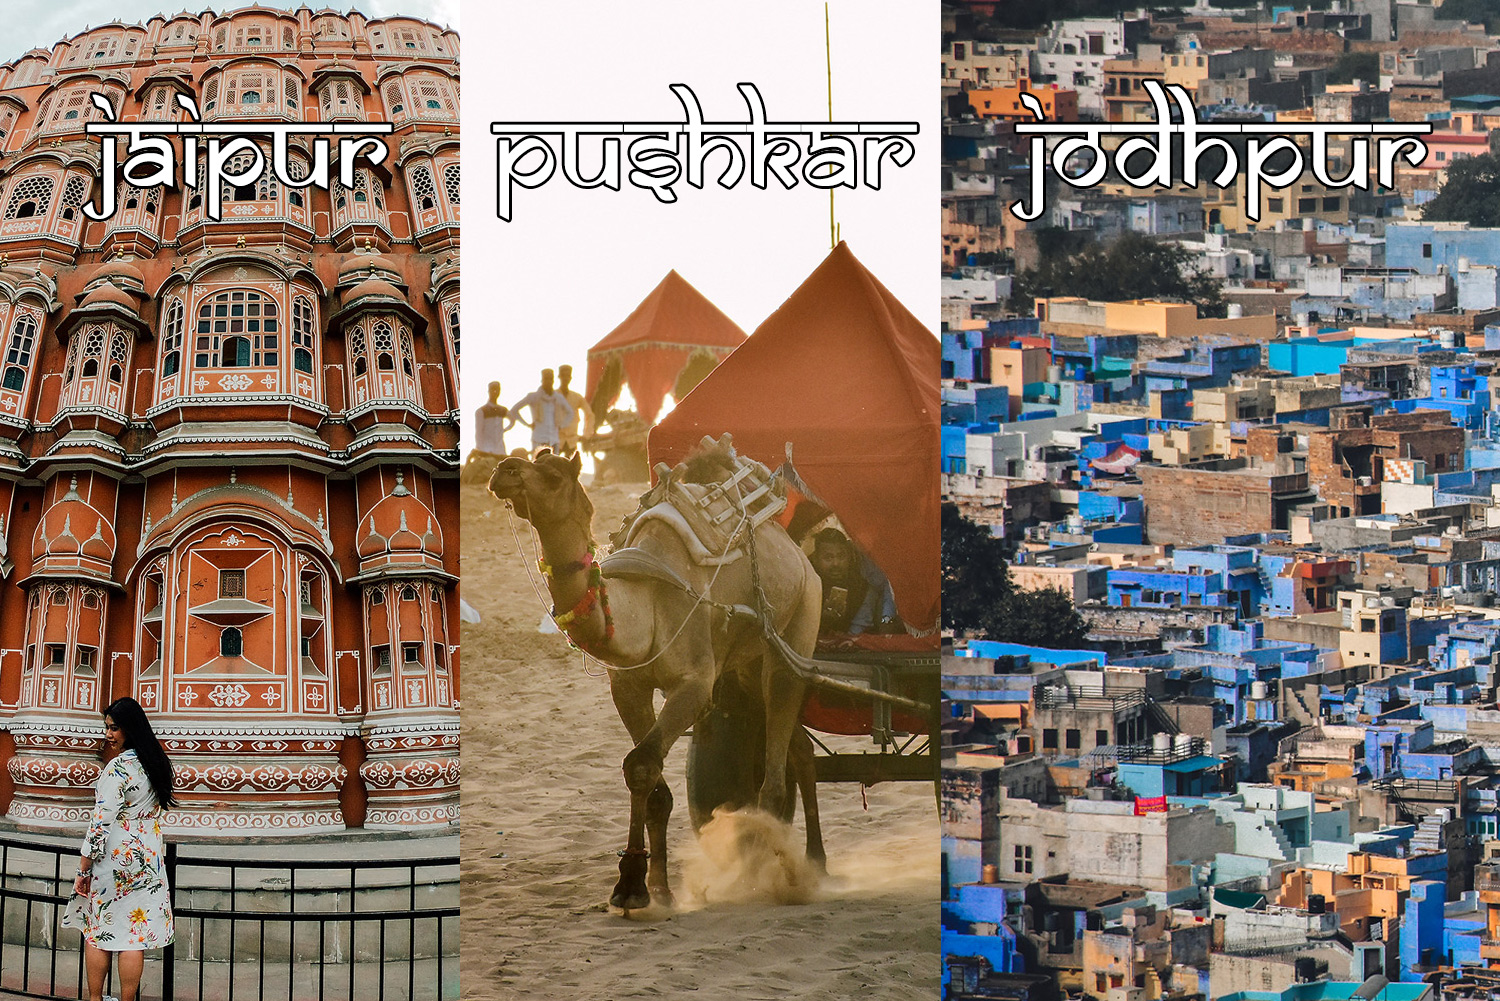 อินเดียไม่ค่อยเพลีย เที่ยว 3 เมืองสีสันแห่งราชสถาน | Jodhpur – Pushkar – Jaipur